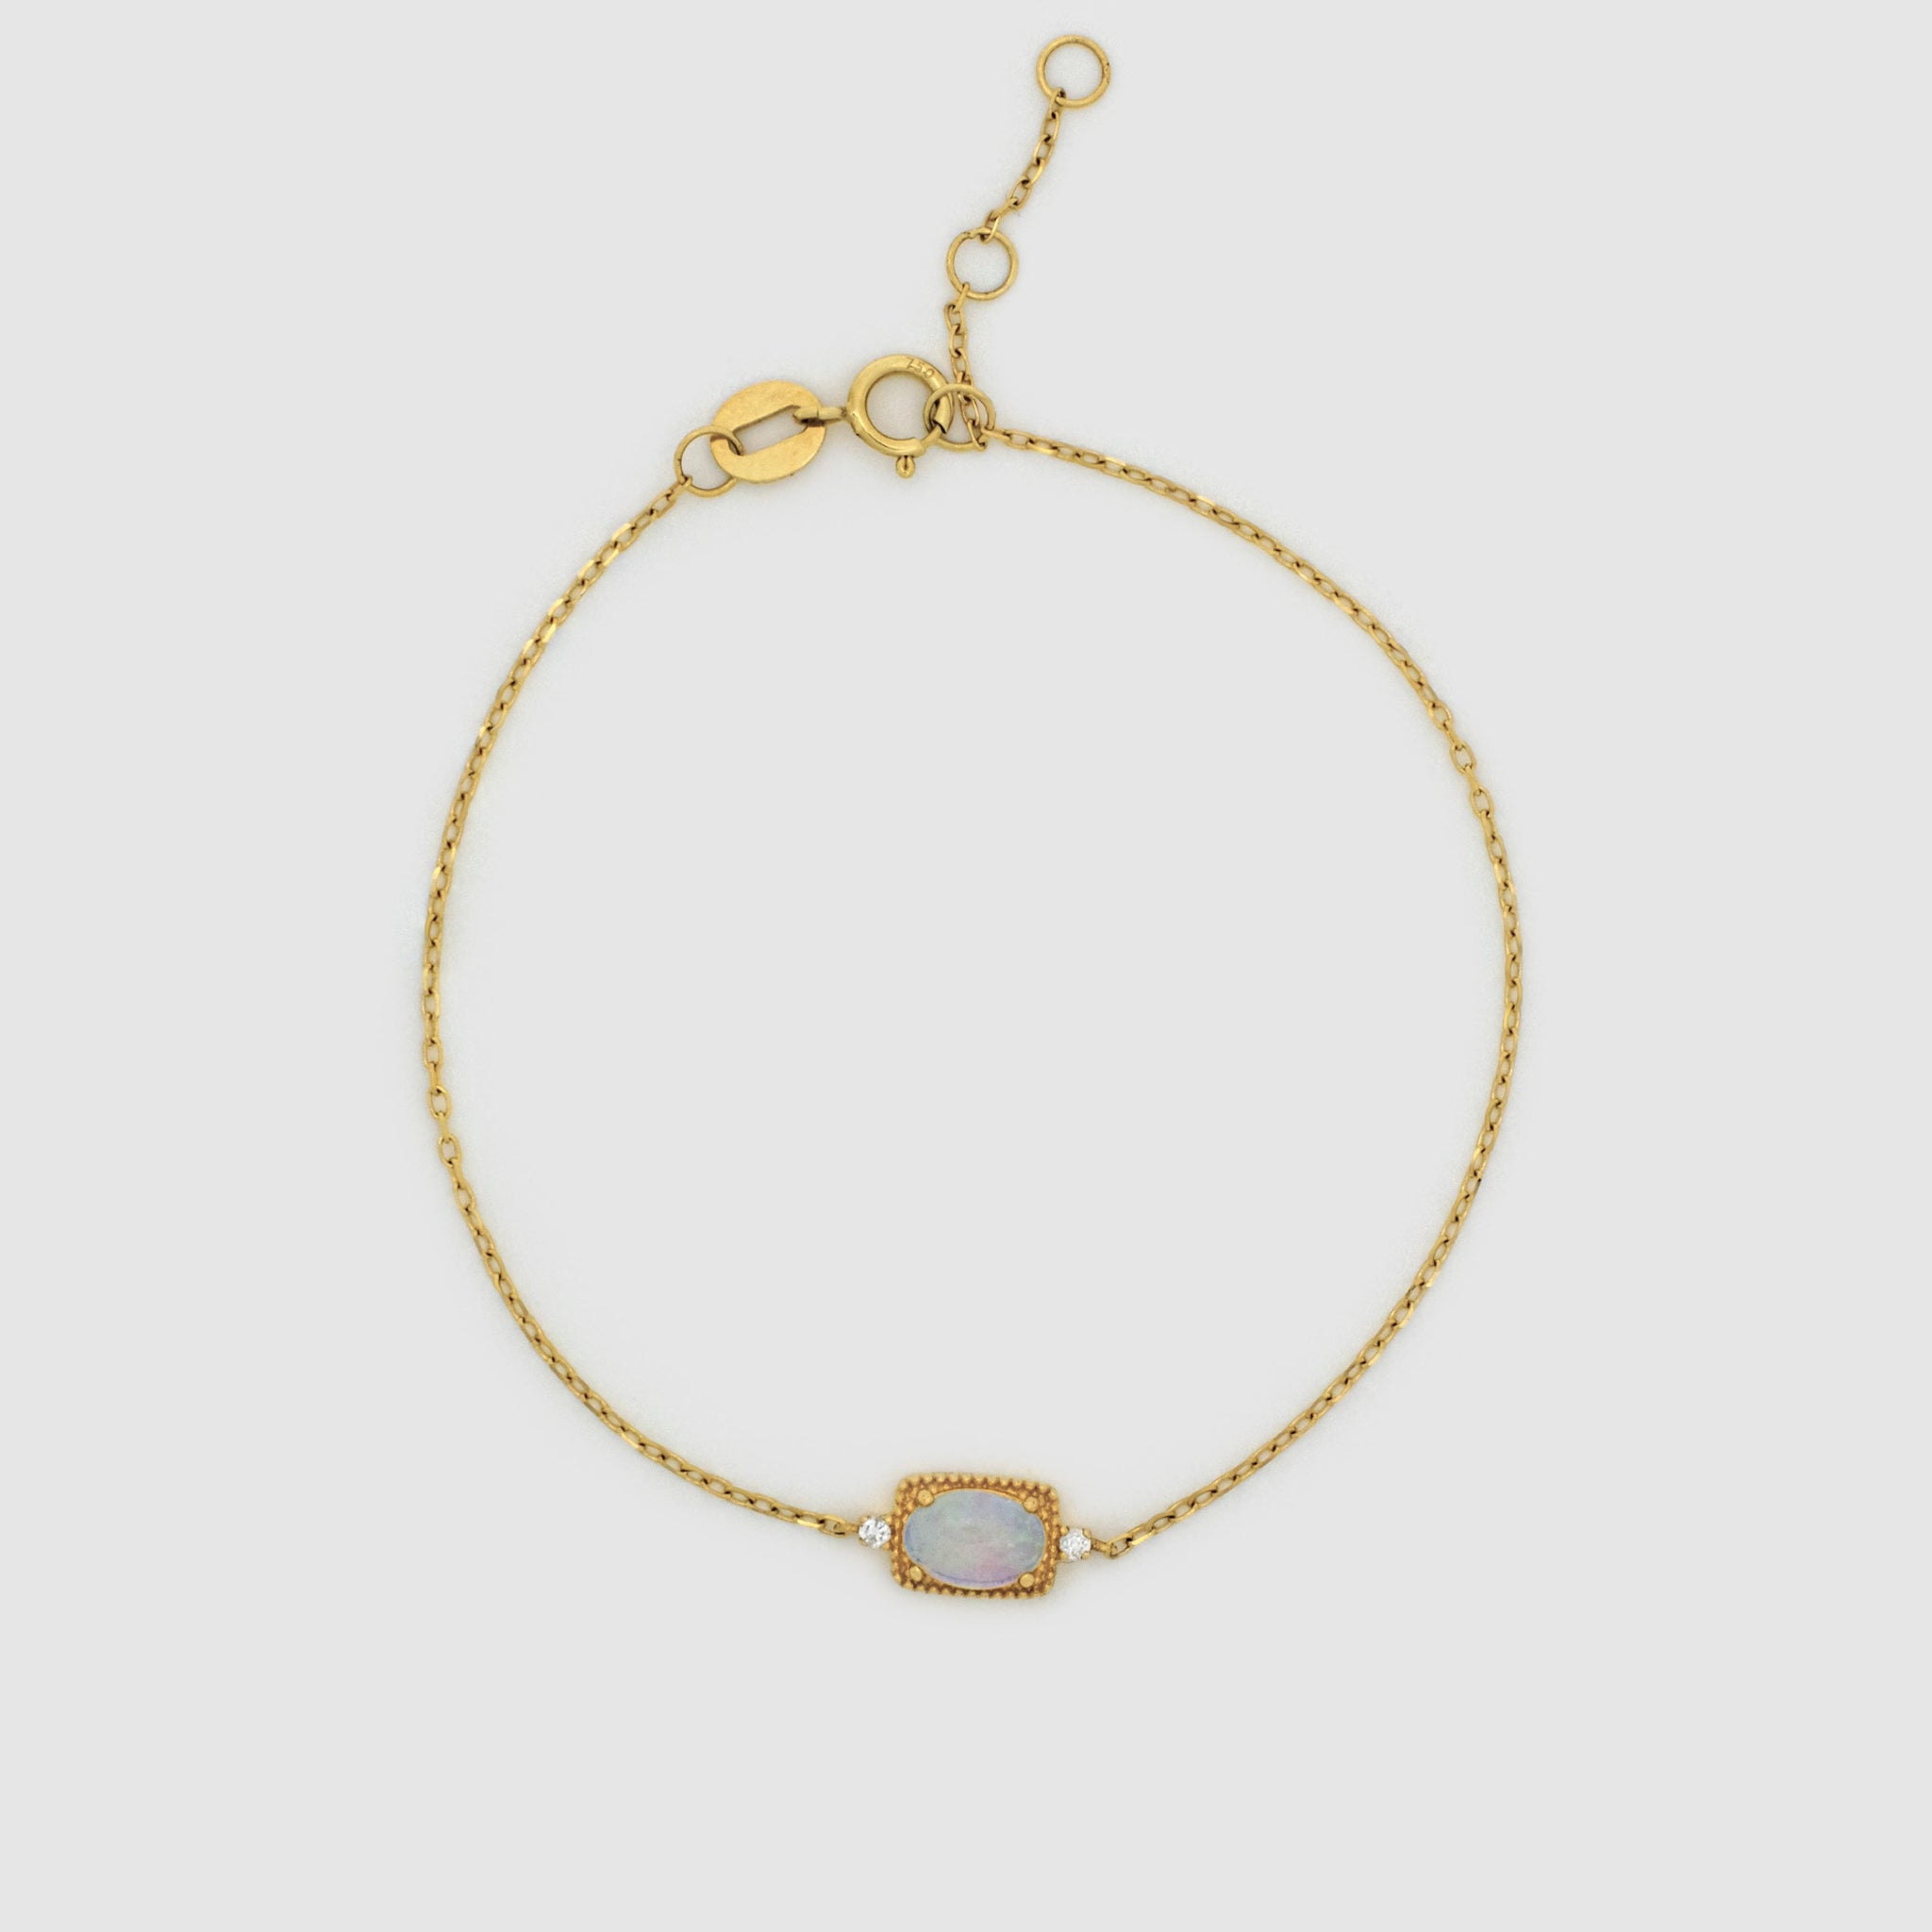 Oval Opal Diamond Bracelet, 18k solid gold